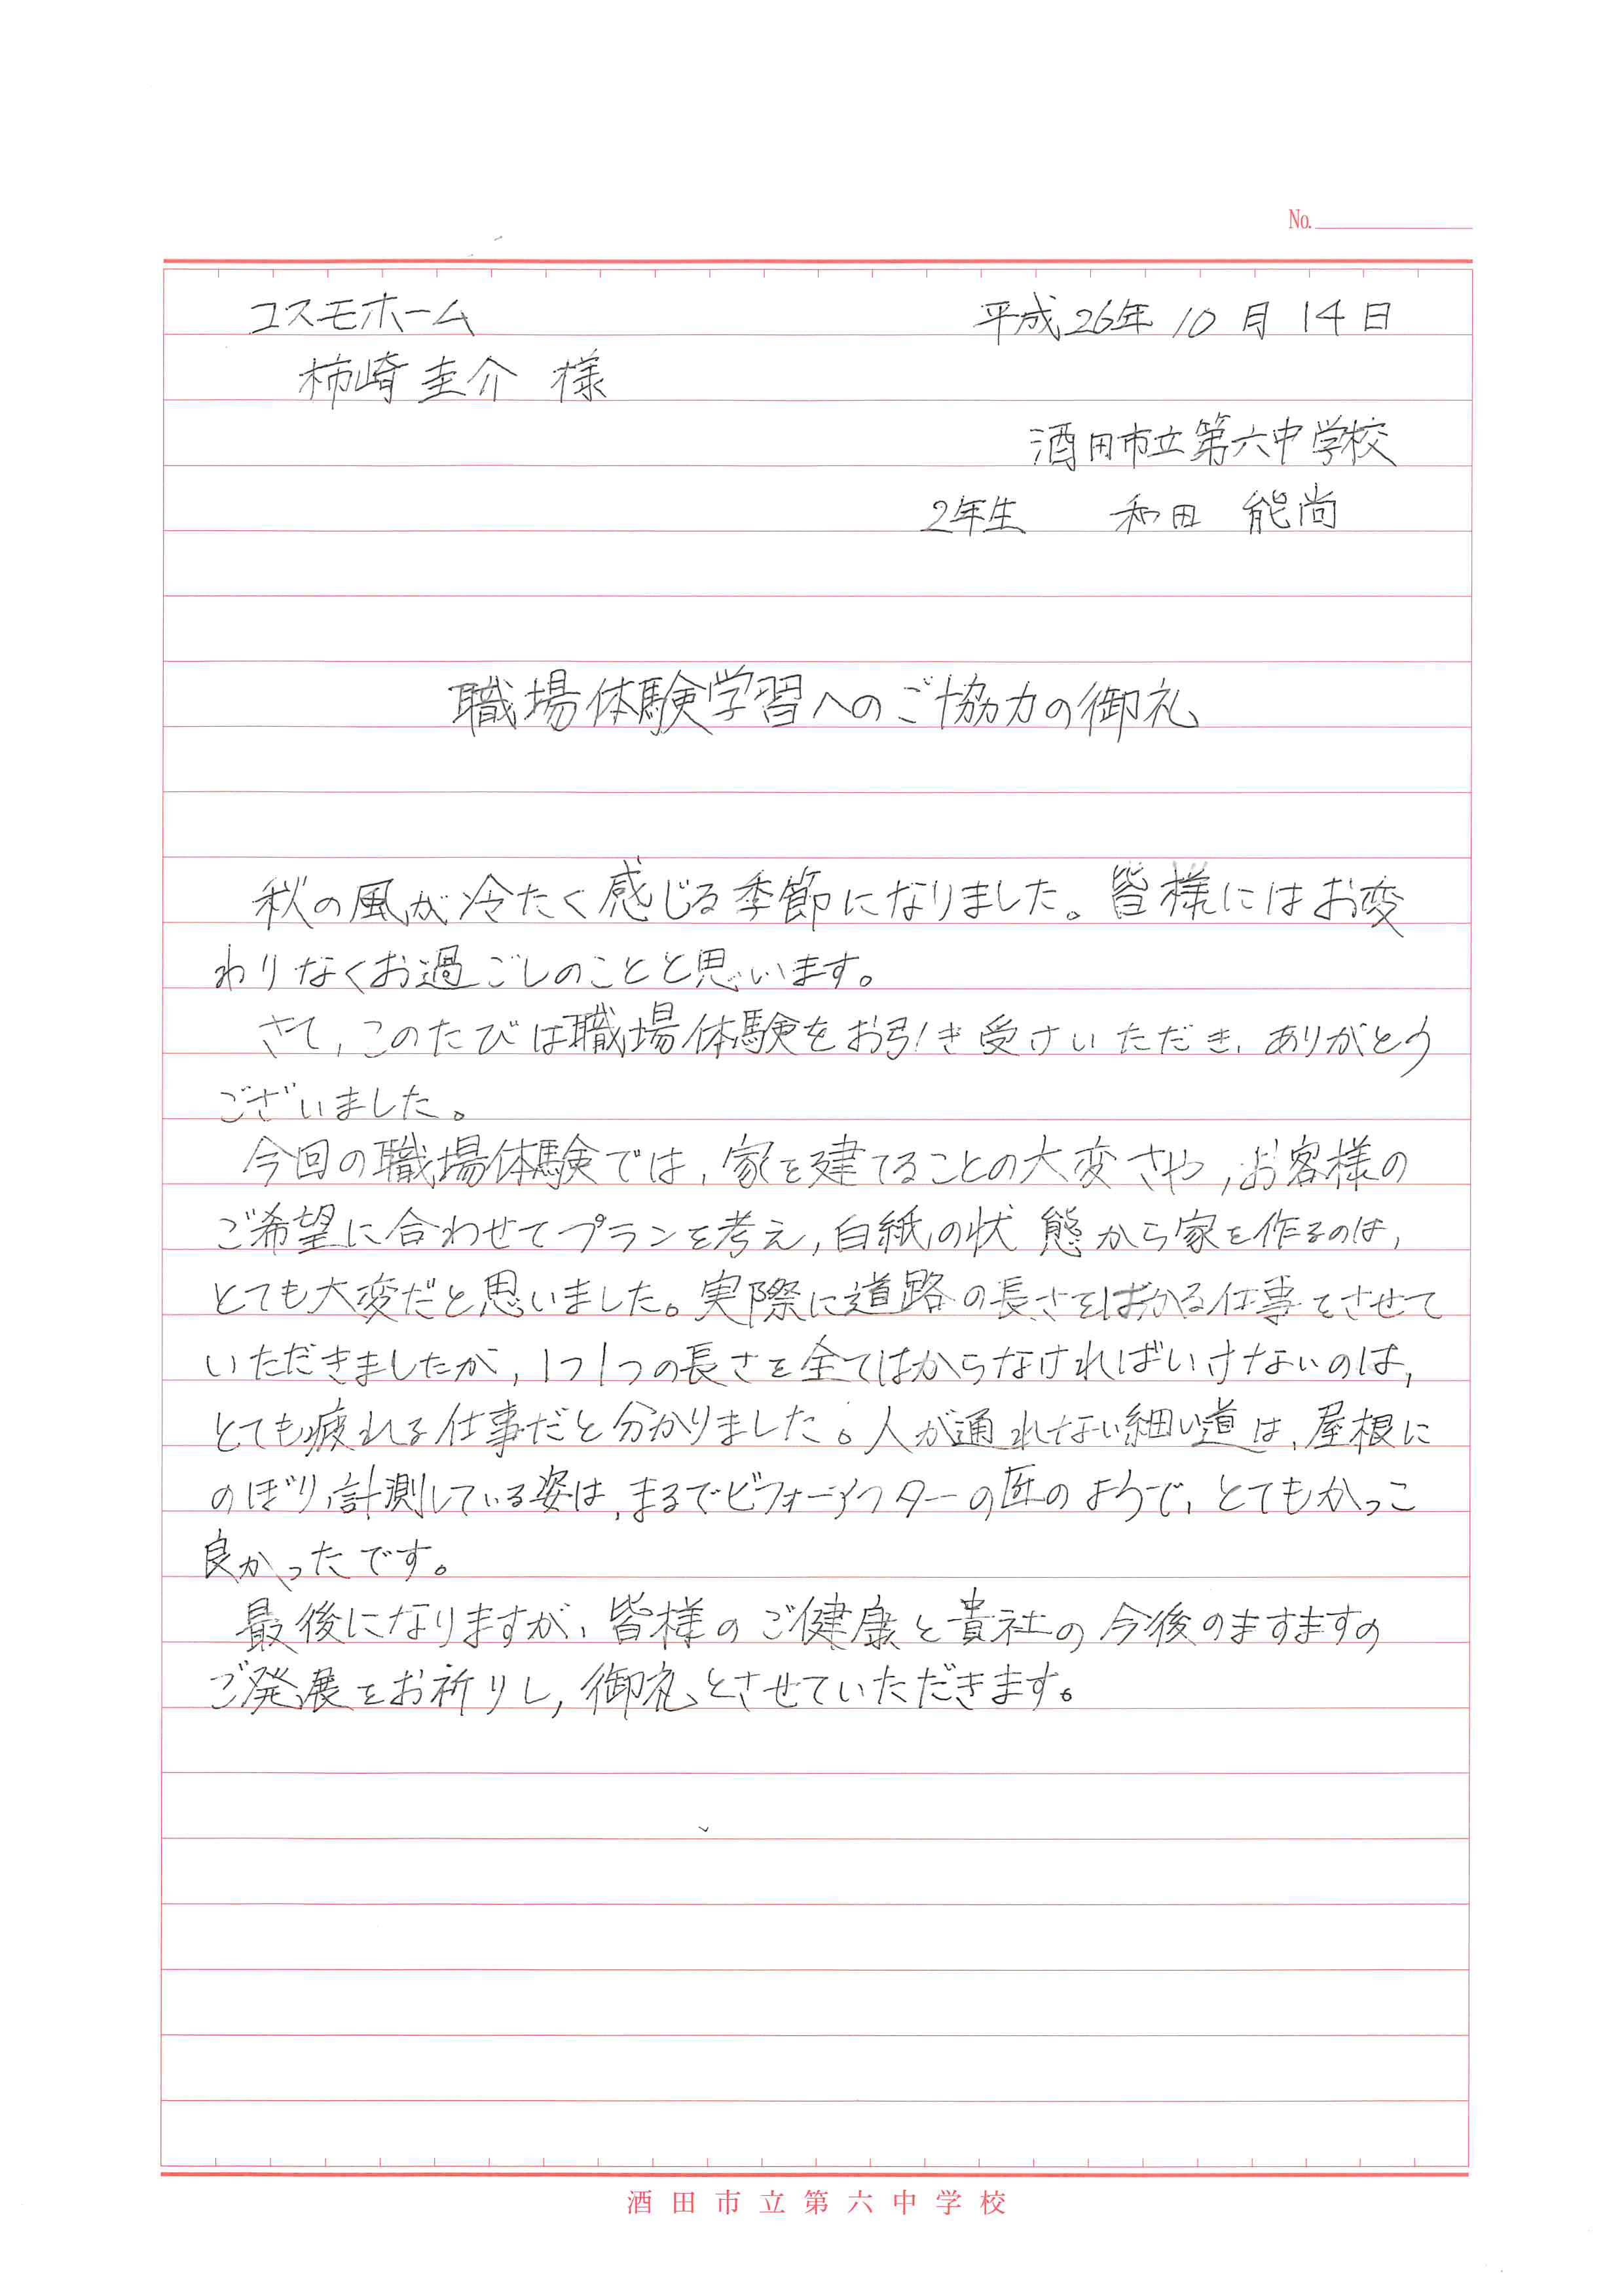 丁寧なお礼の手紙頂きました。 スタッフ柿崎社長ブログ